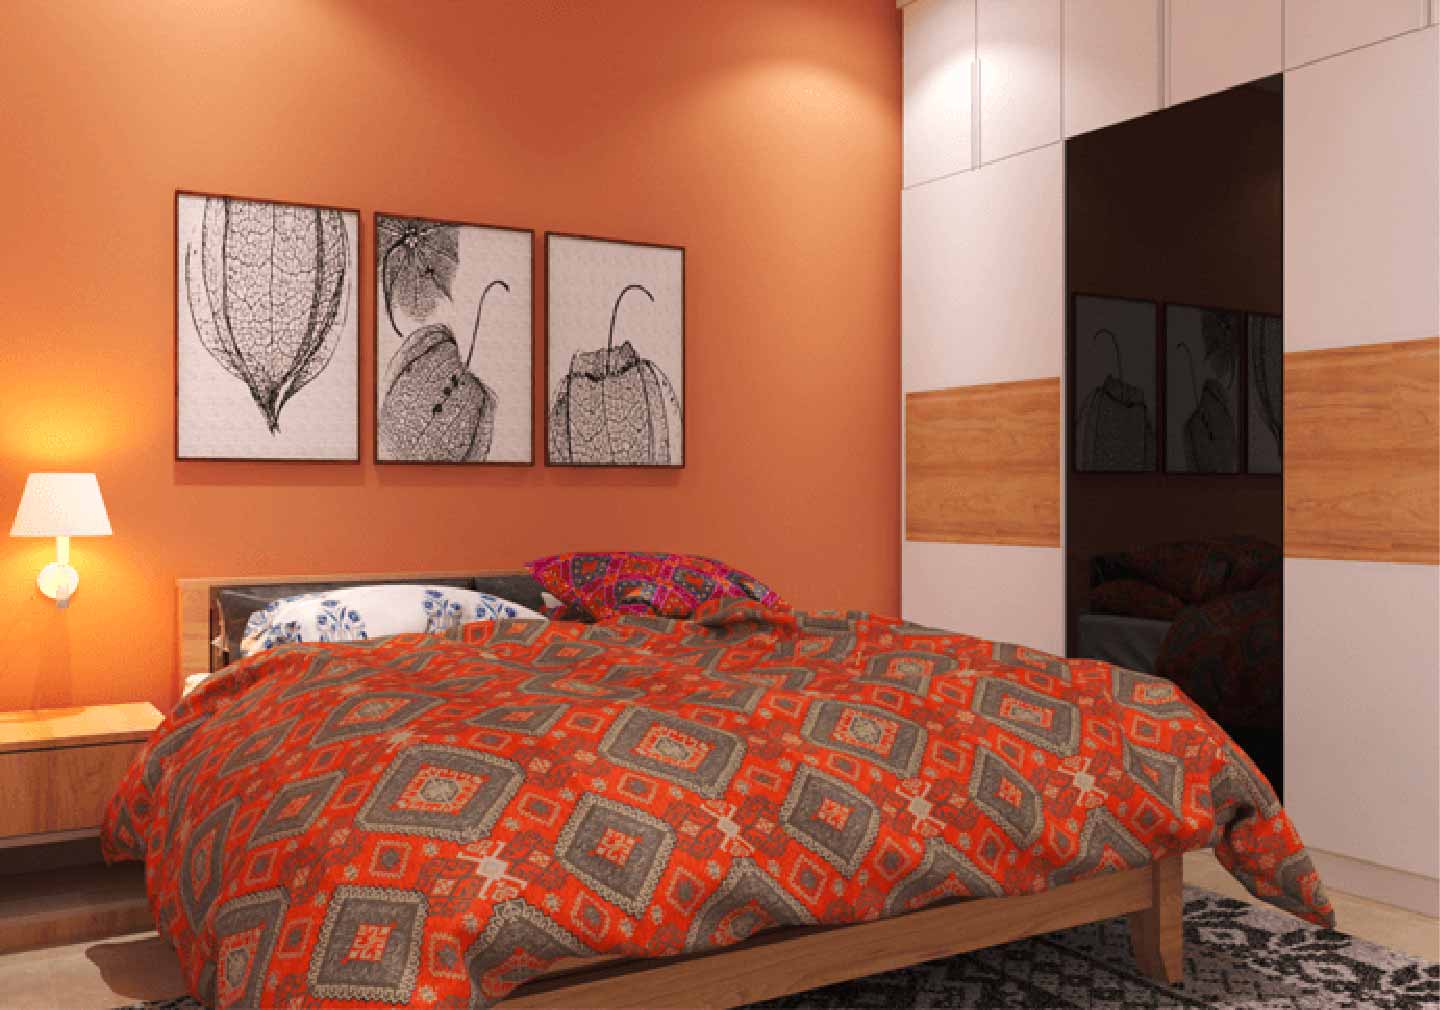 Coloured Floor - Bedroom Interior Design